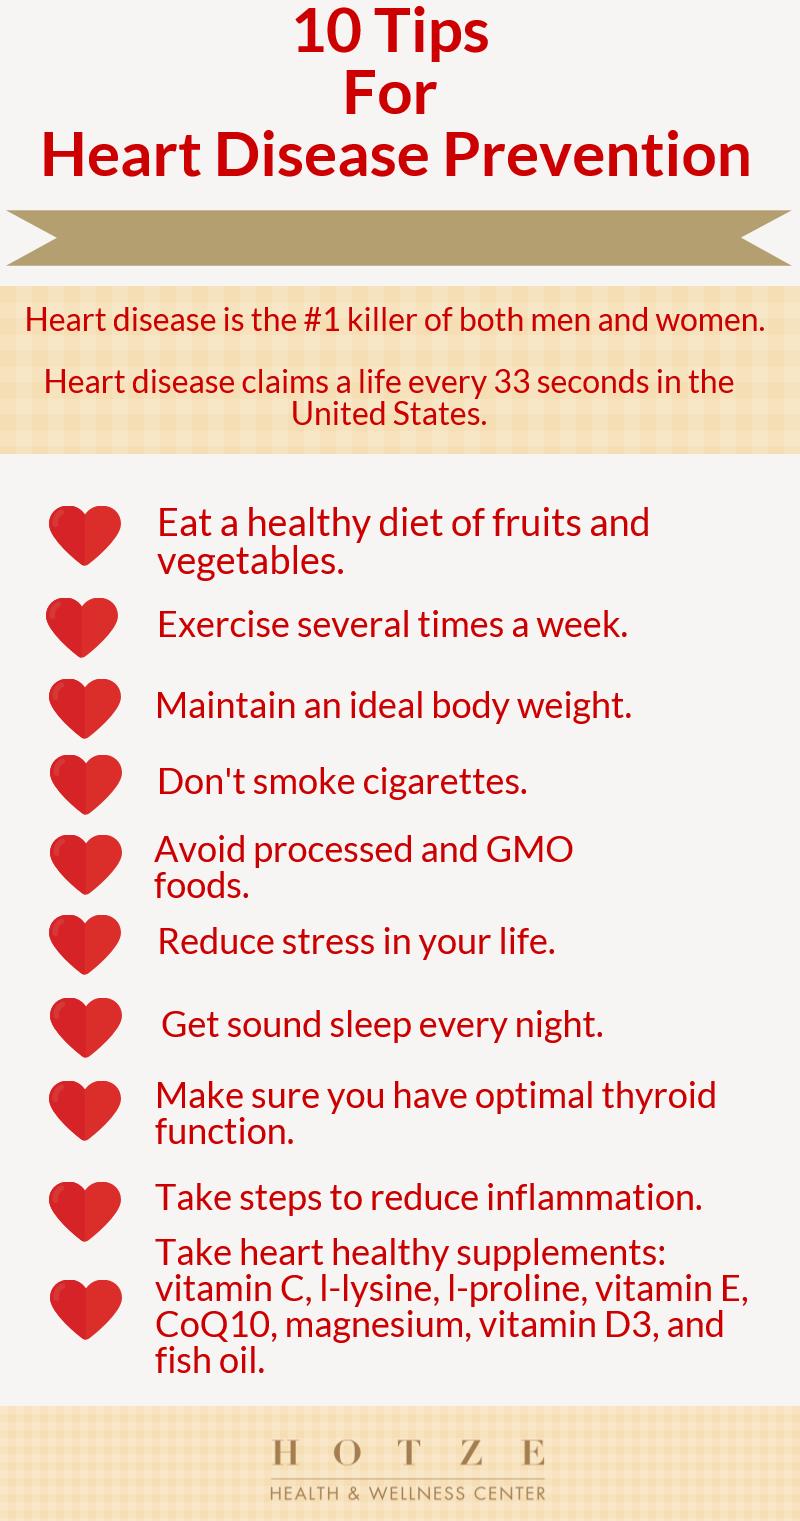 10 Tips for Heart Disease Prevention